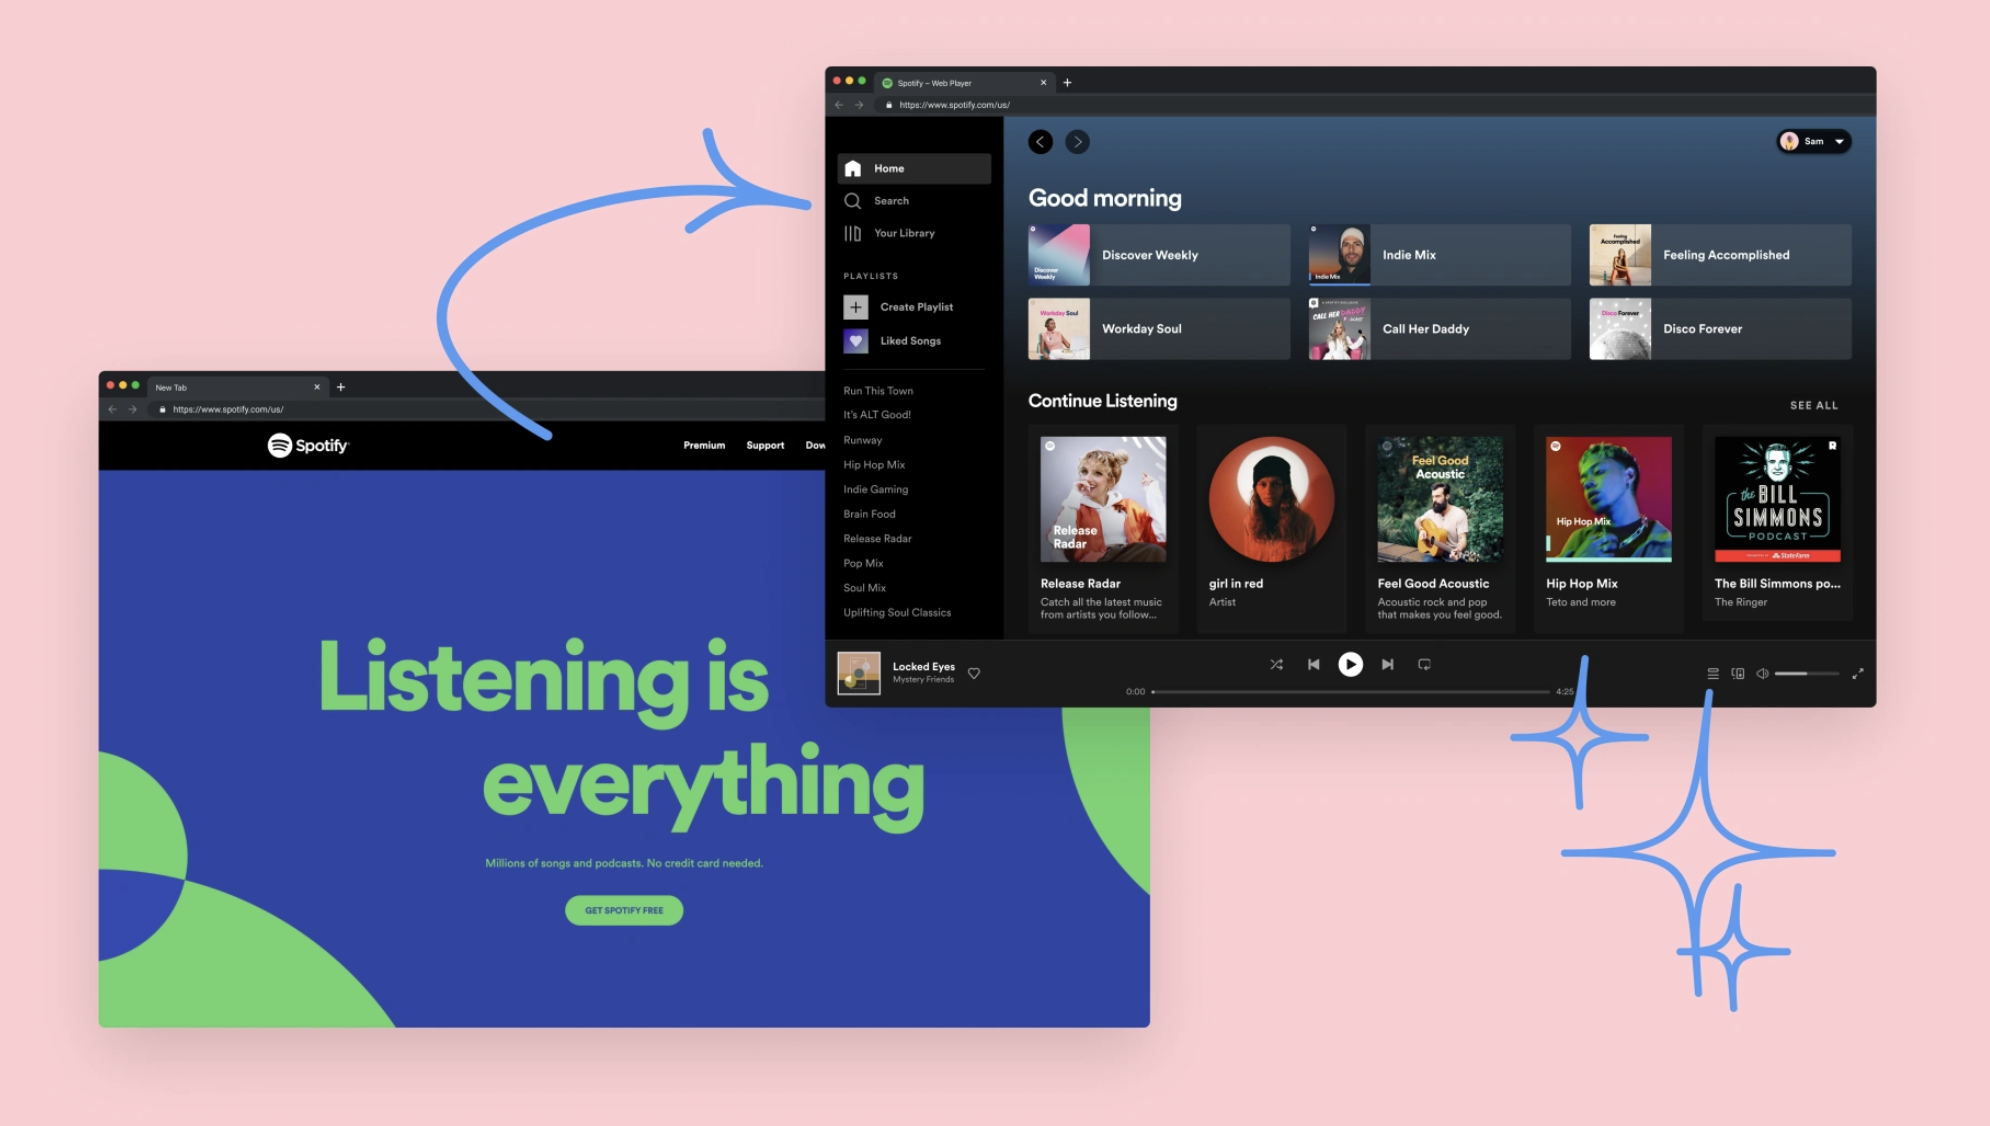 Zmiana strony głównej Spotify - zdjęcie główne artykułu "From Web Page to Web Player: How Spotify Designed a New Homepage Experience"